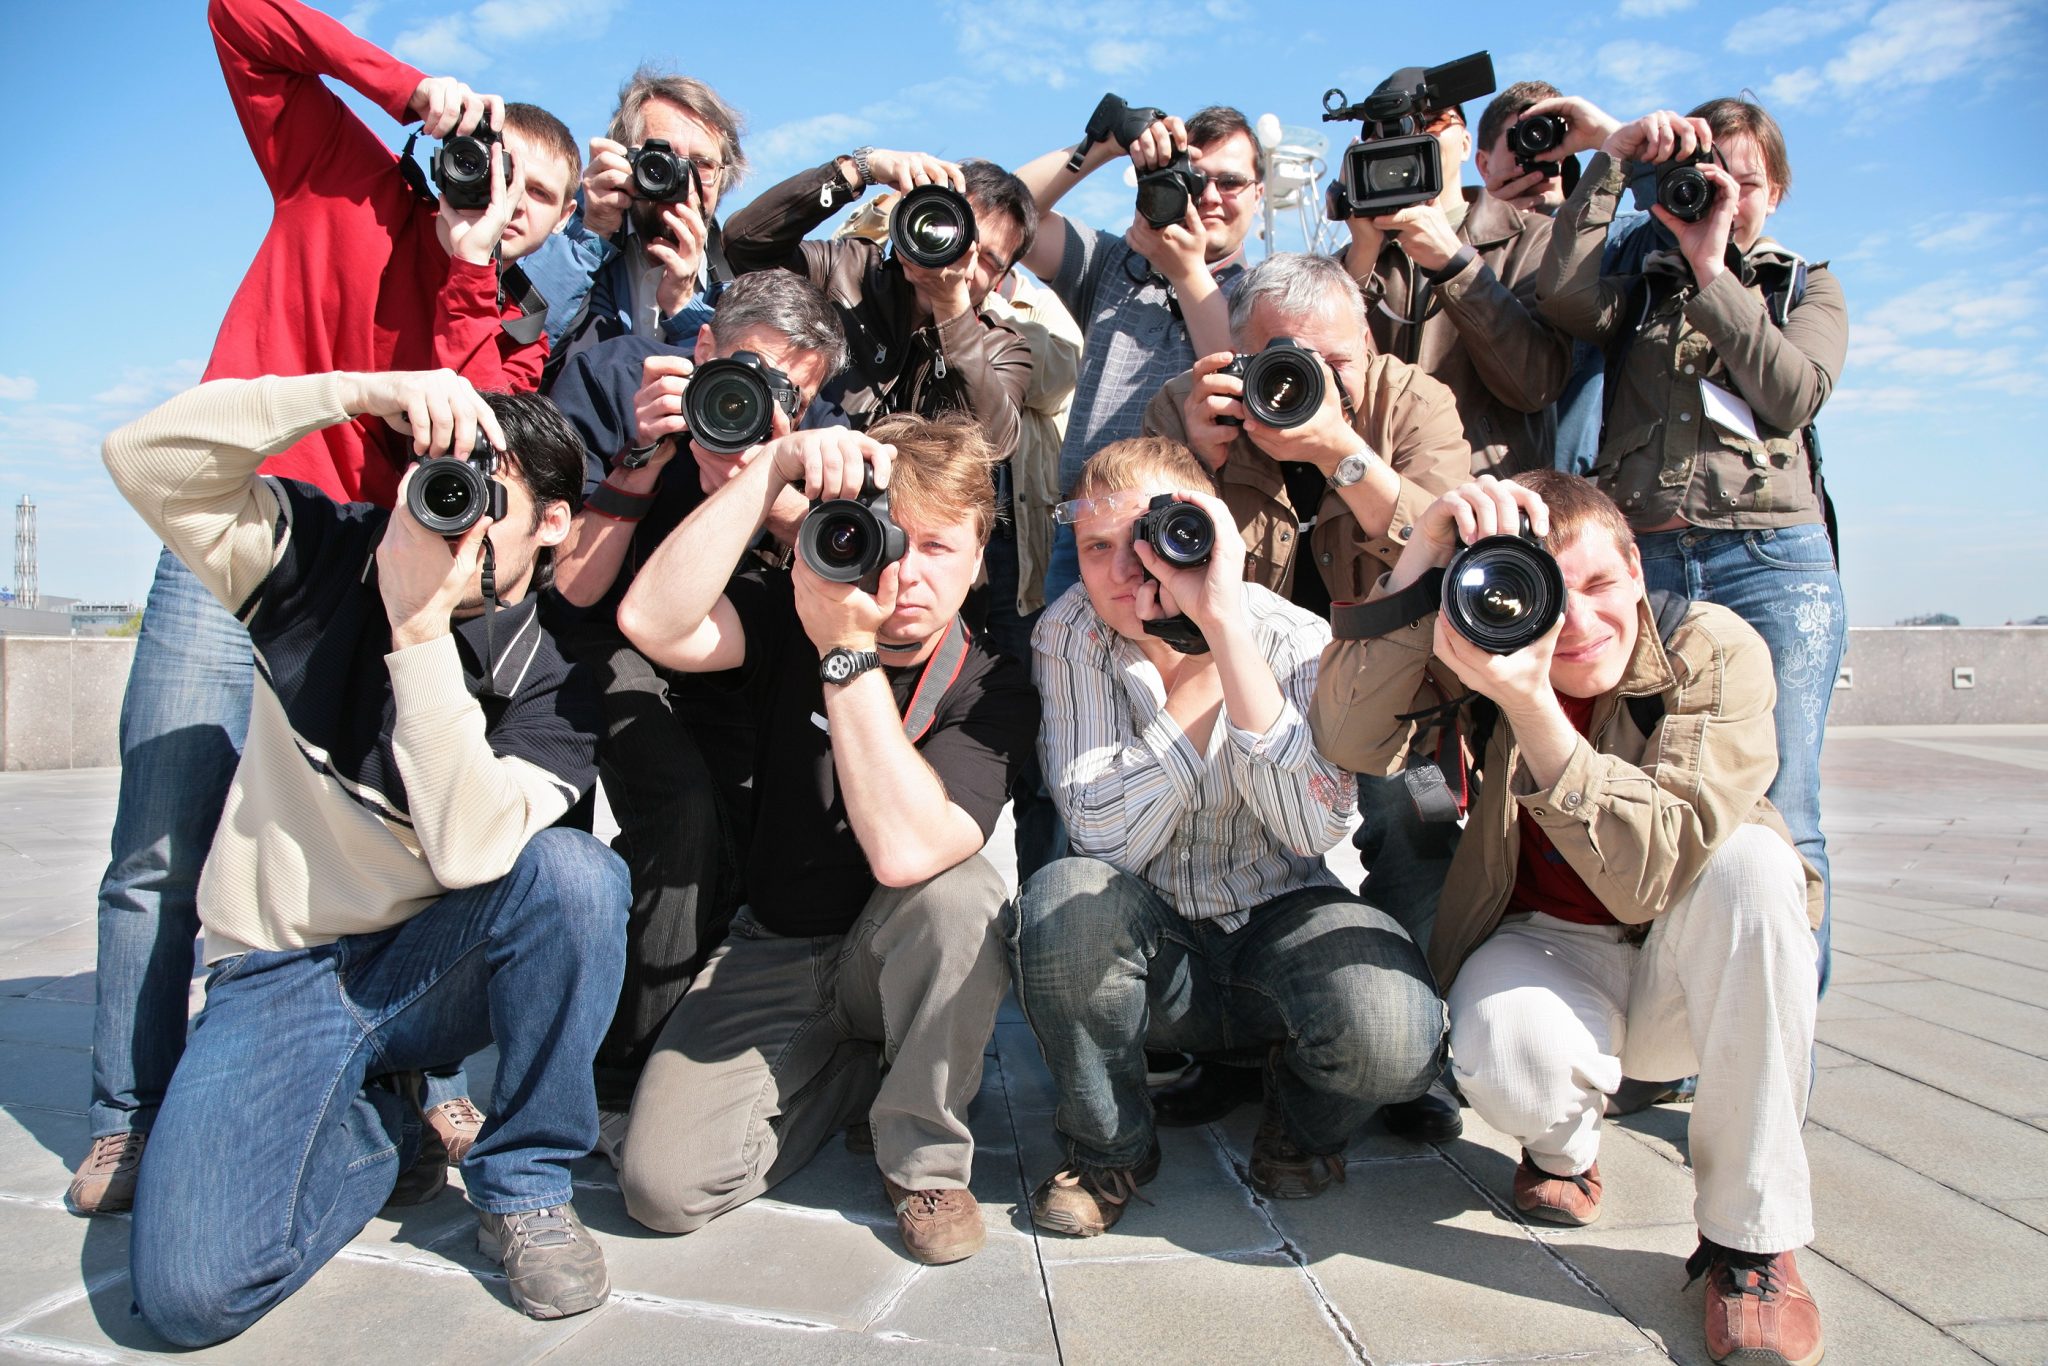 Толпа туристов на природе устроили развратную групповуху на видео камеру